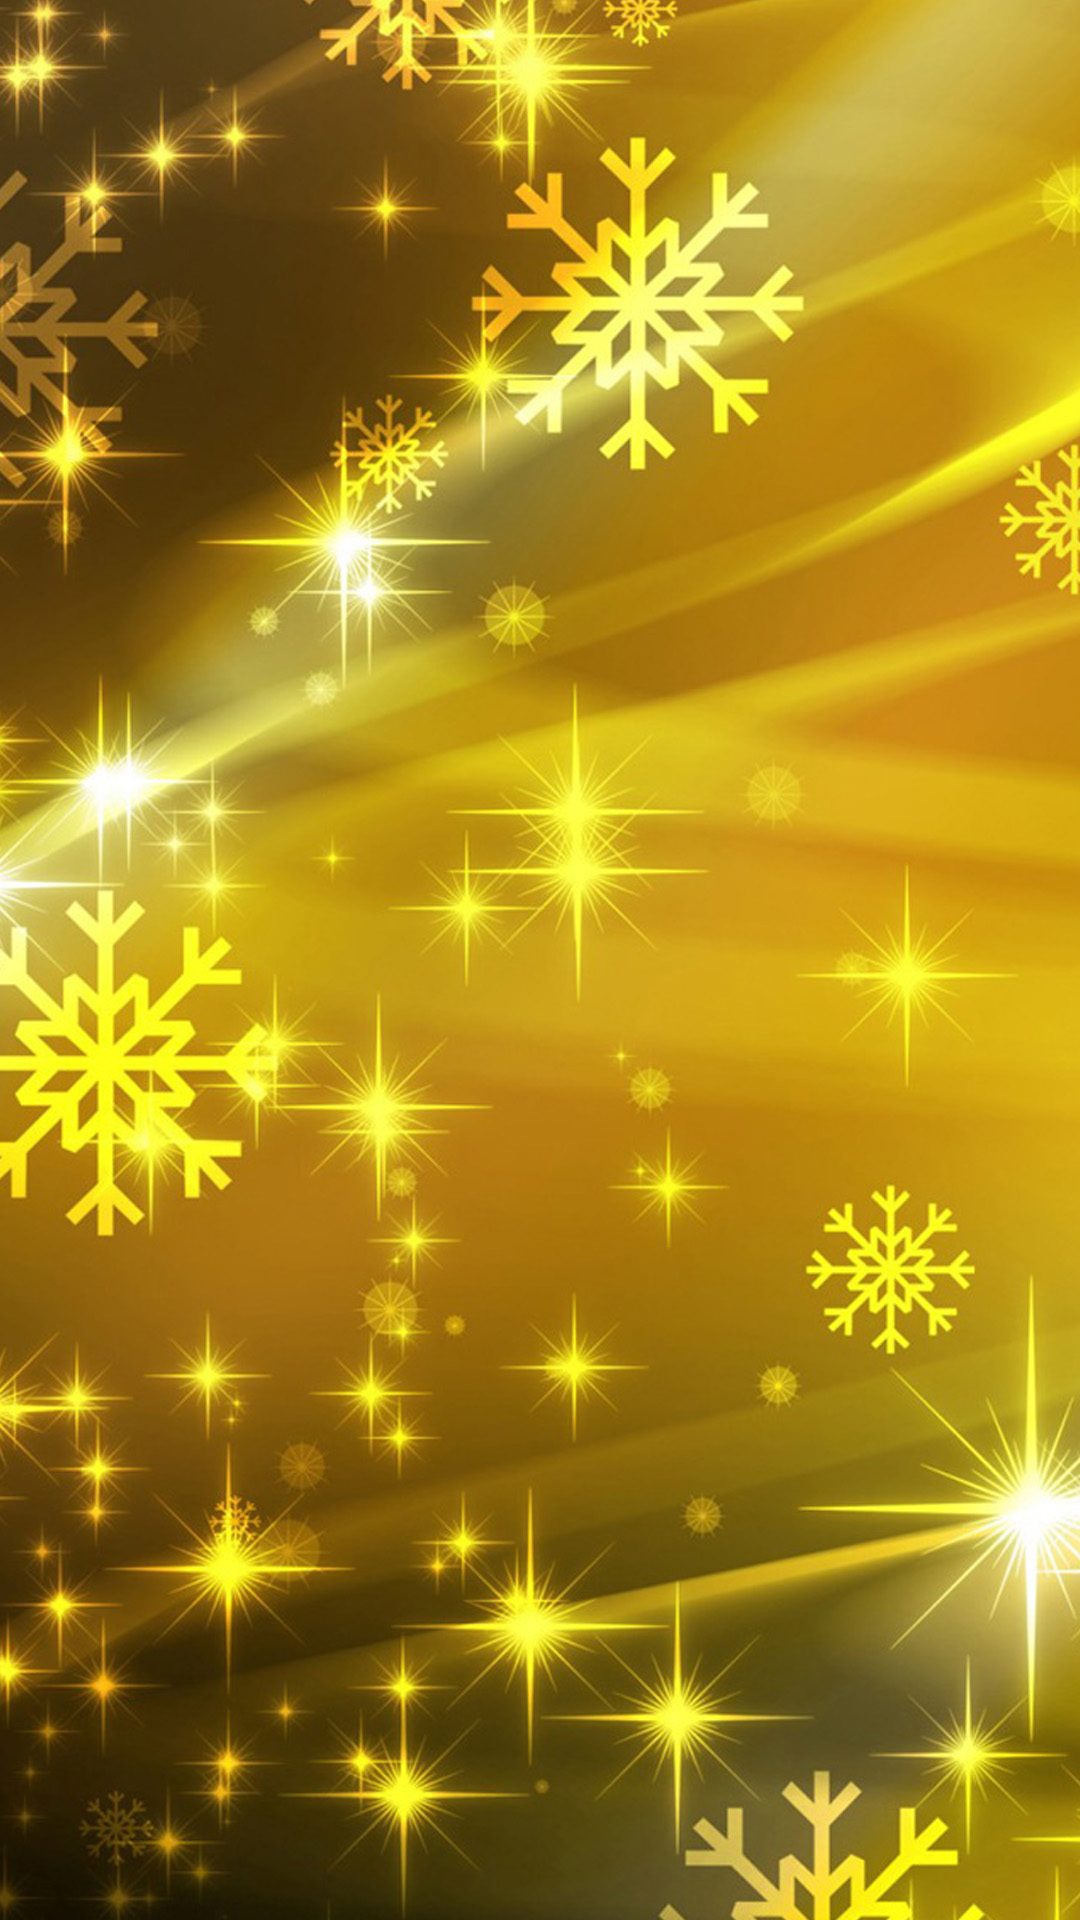 アンドロイドのためのカラフルな壁紙,光,黄,ゴールド,パターン,クリスマスの飾り